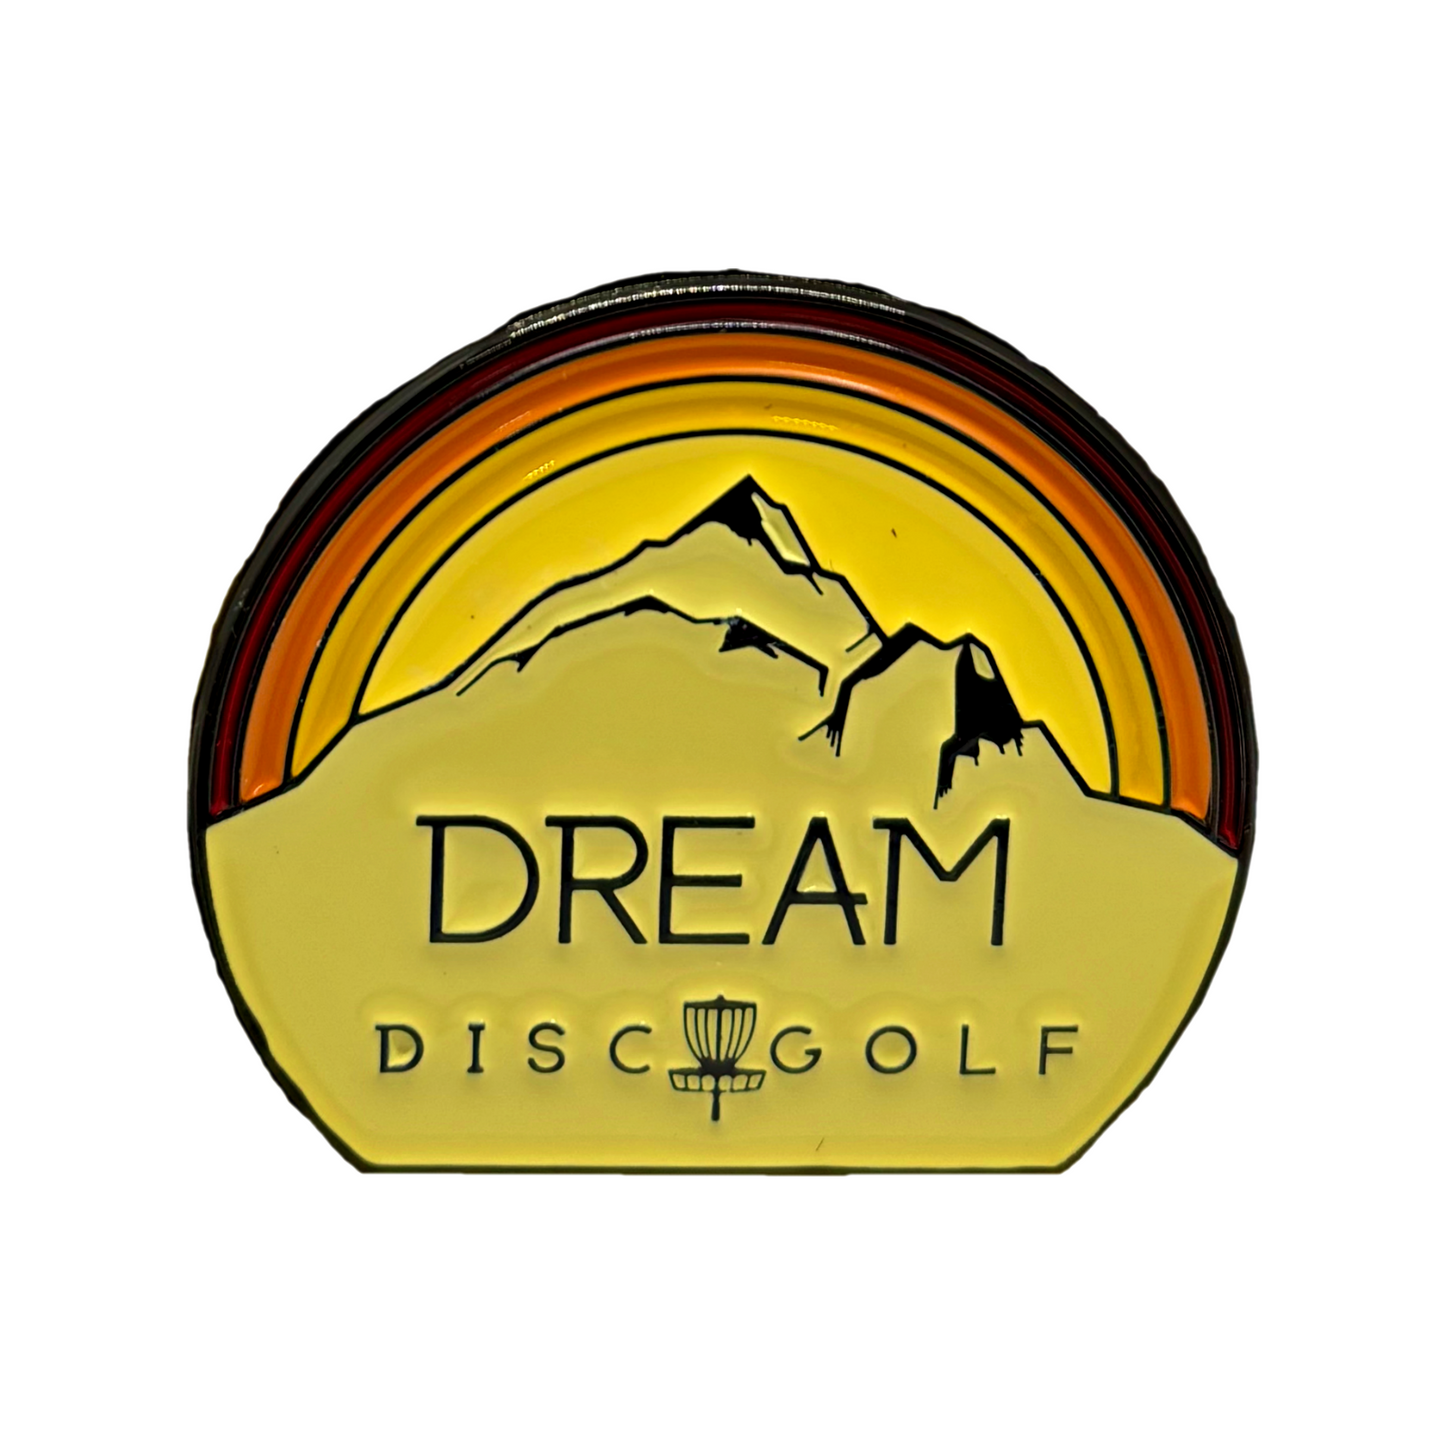 Dream Disc Golf Pins